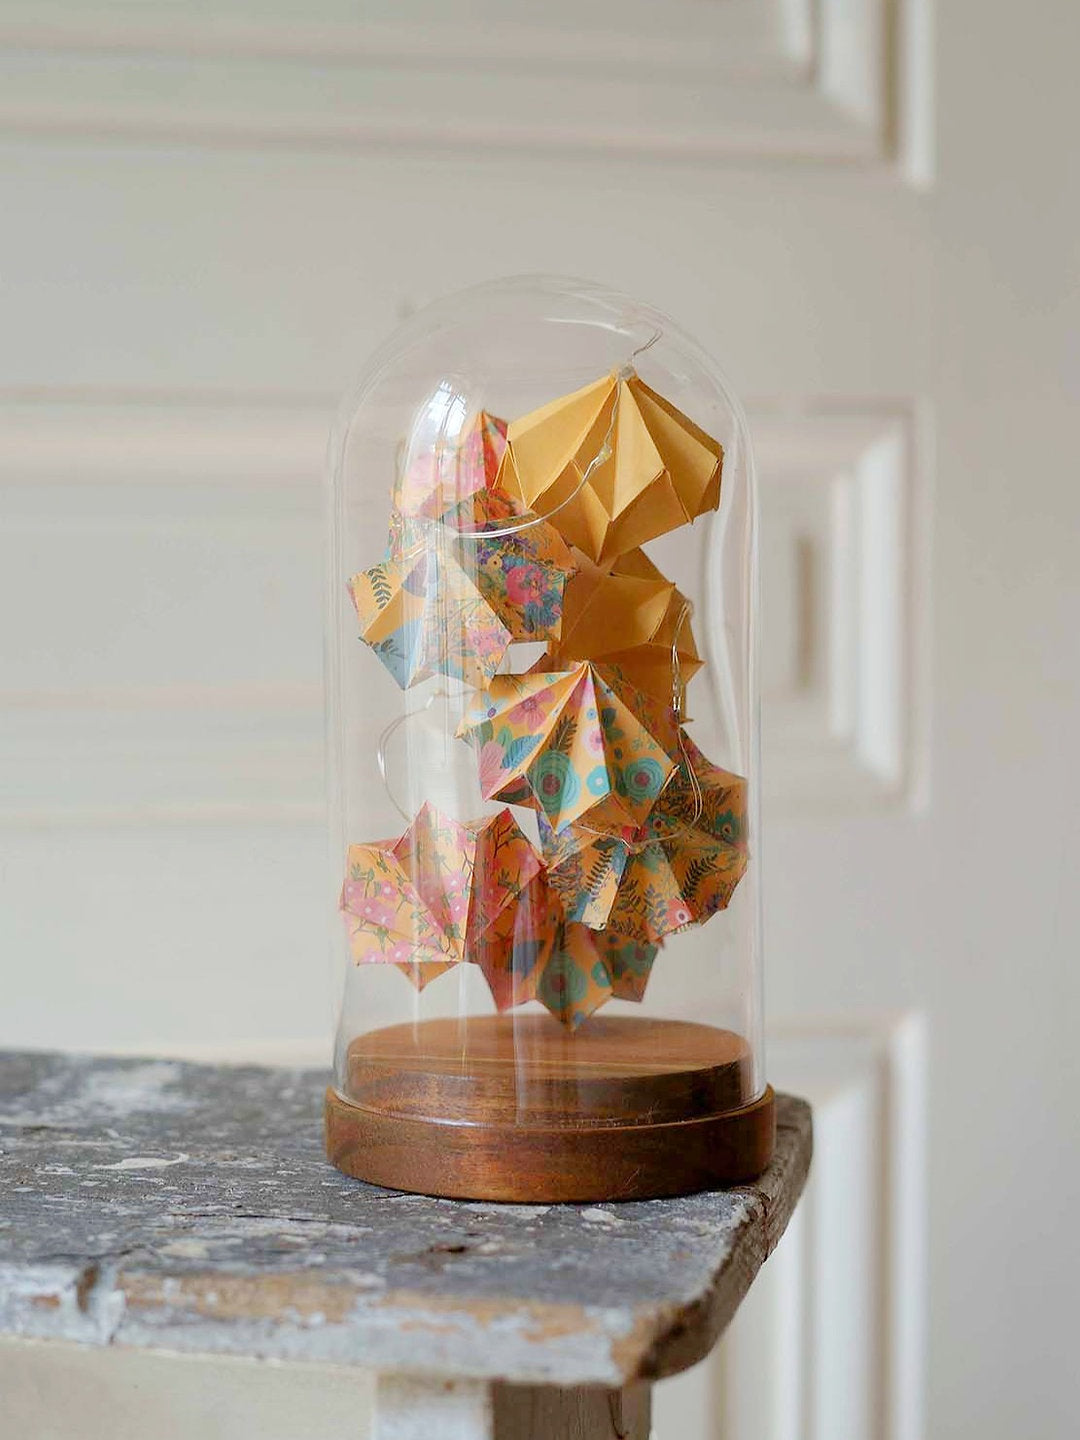 Grande cloche verre - Guirlande lumineuse de diamants en origami - Agrume